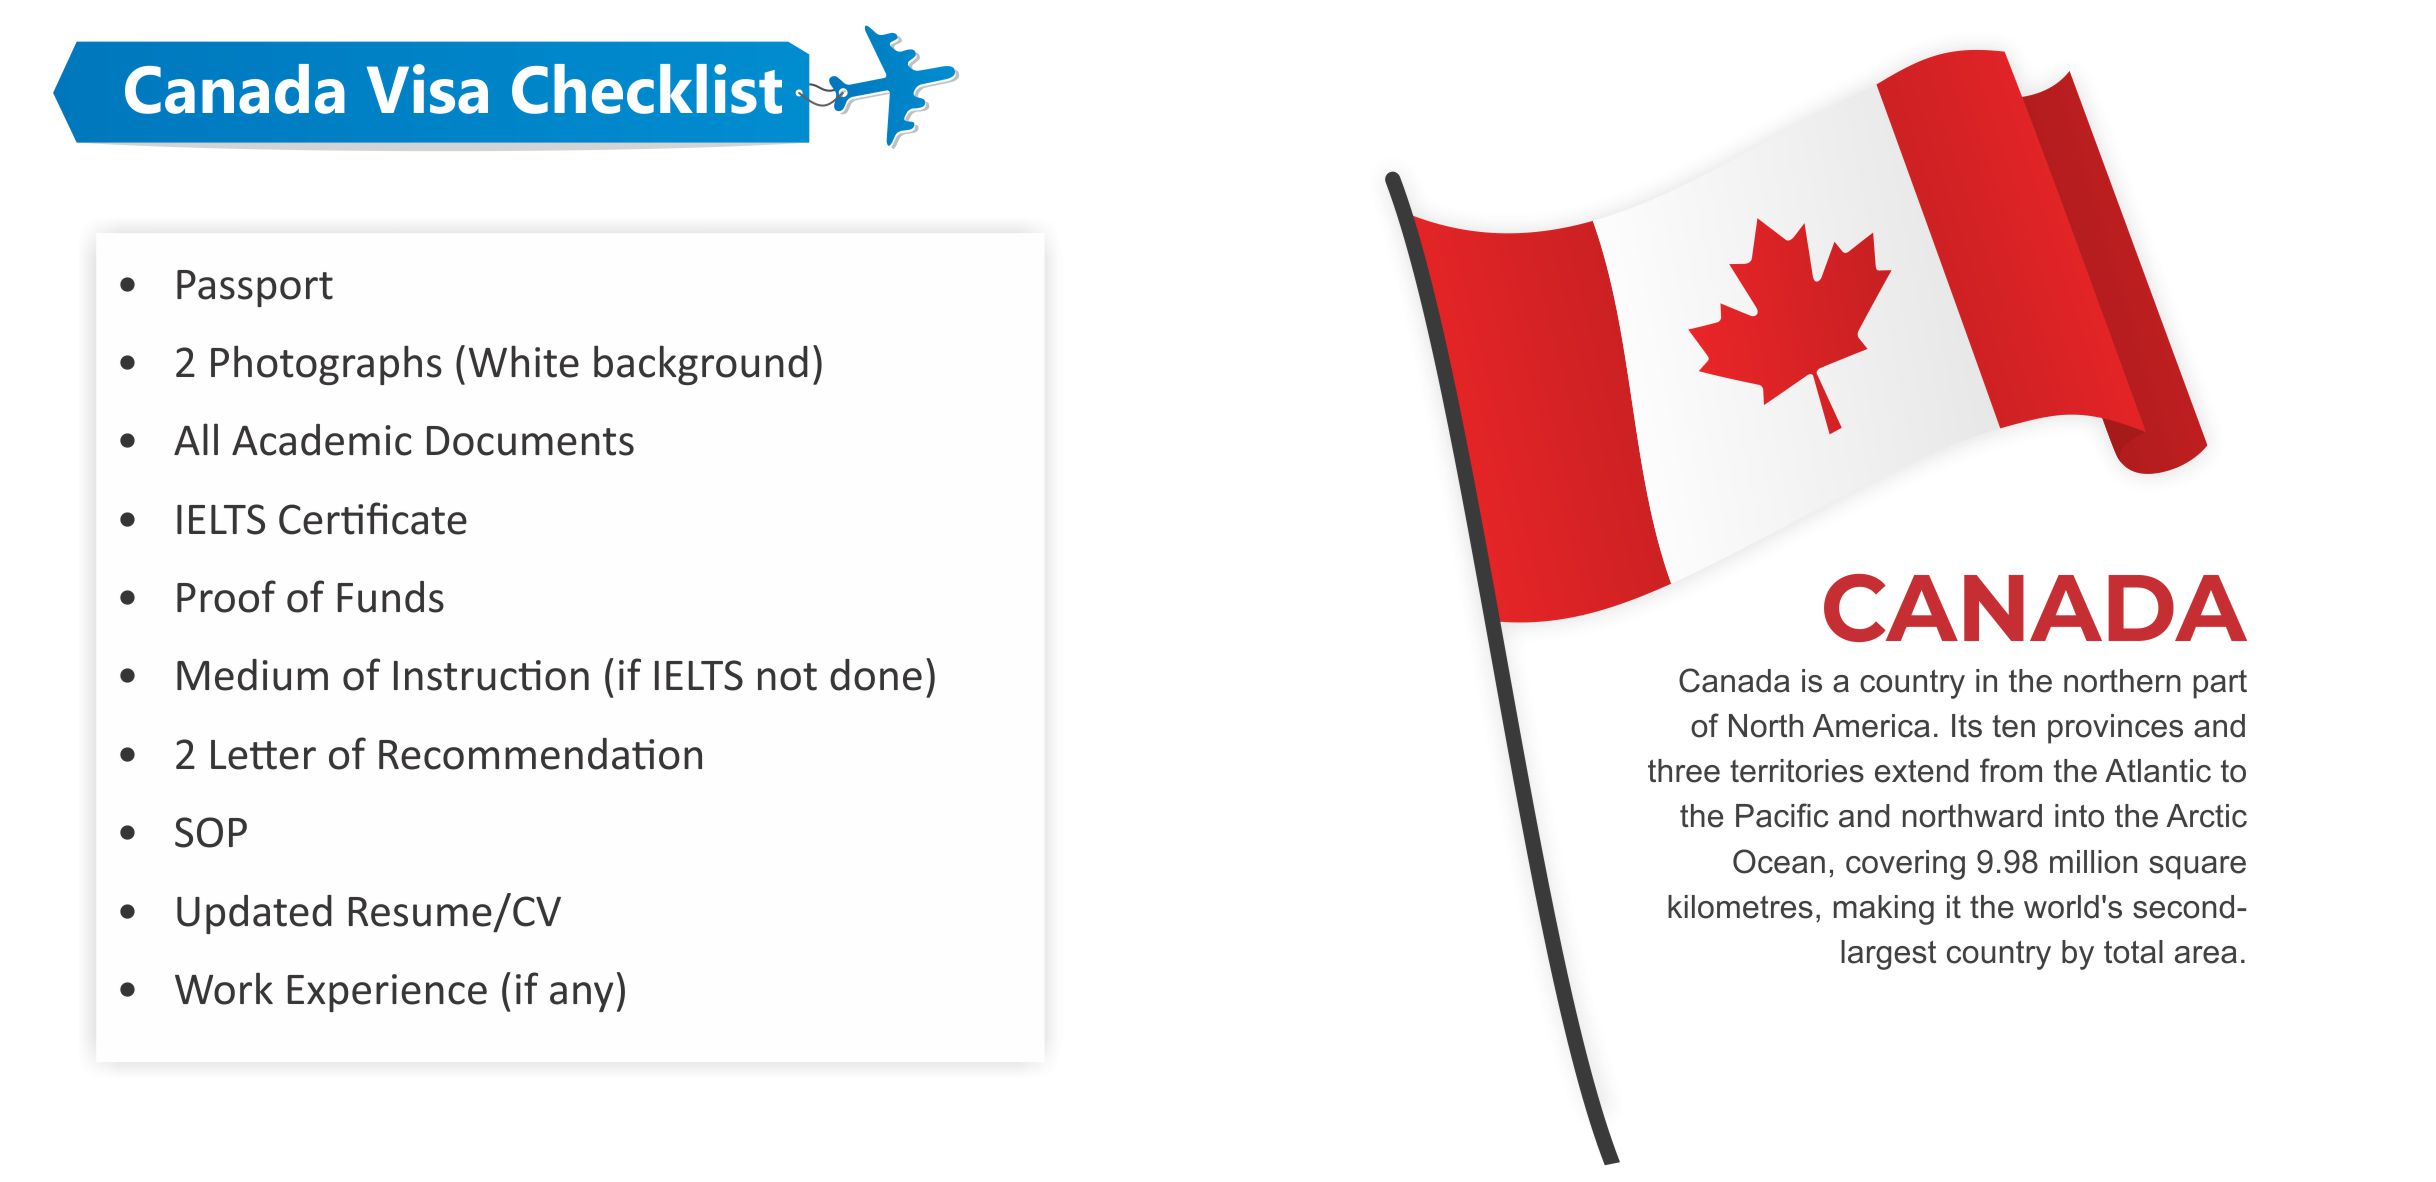 Canada Visa Checklist